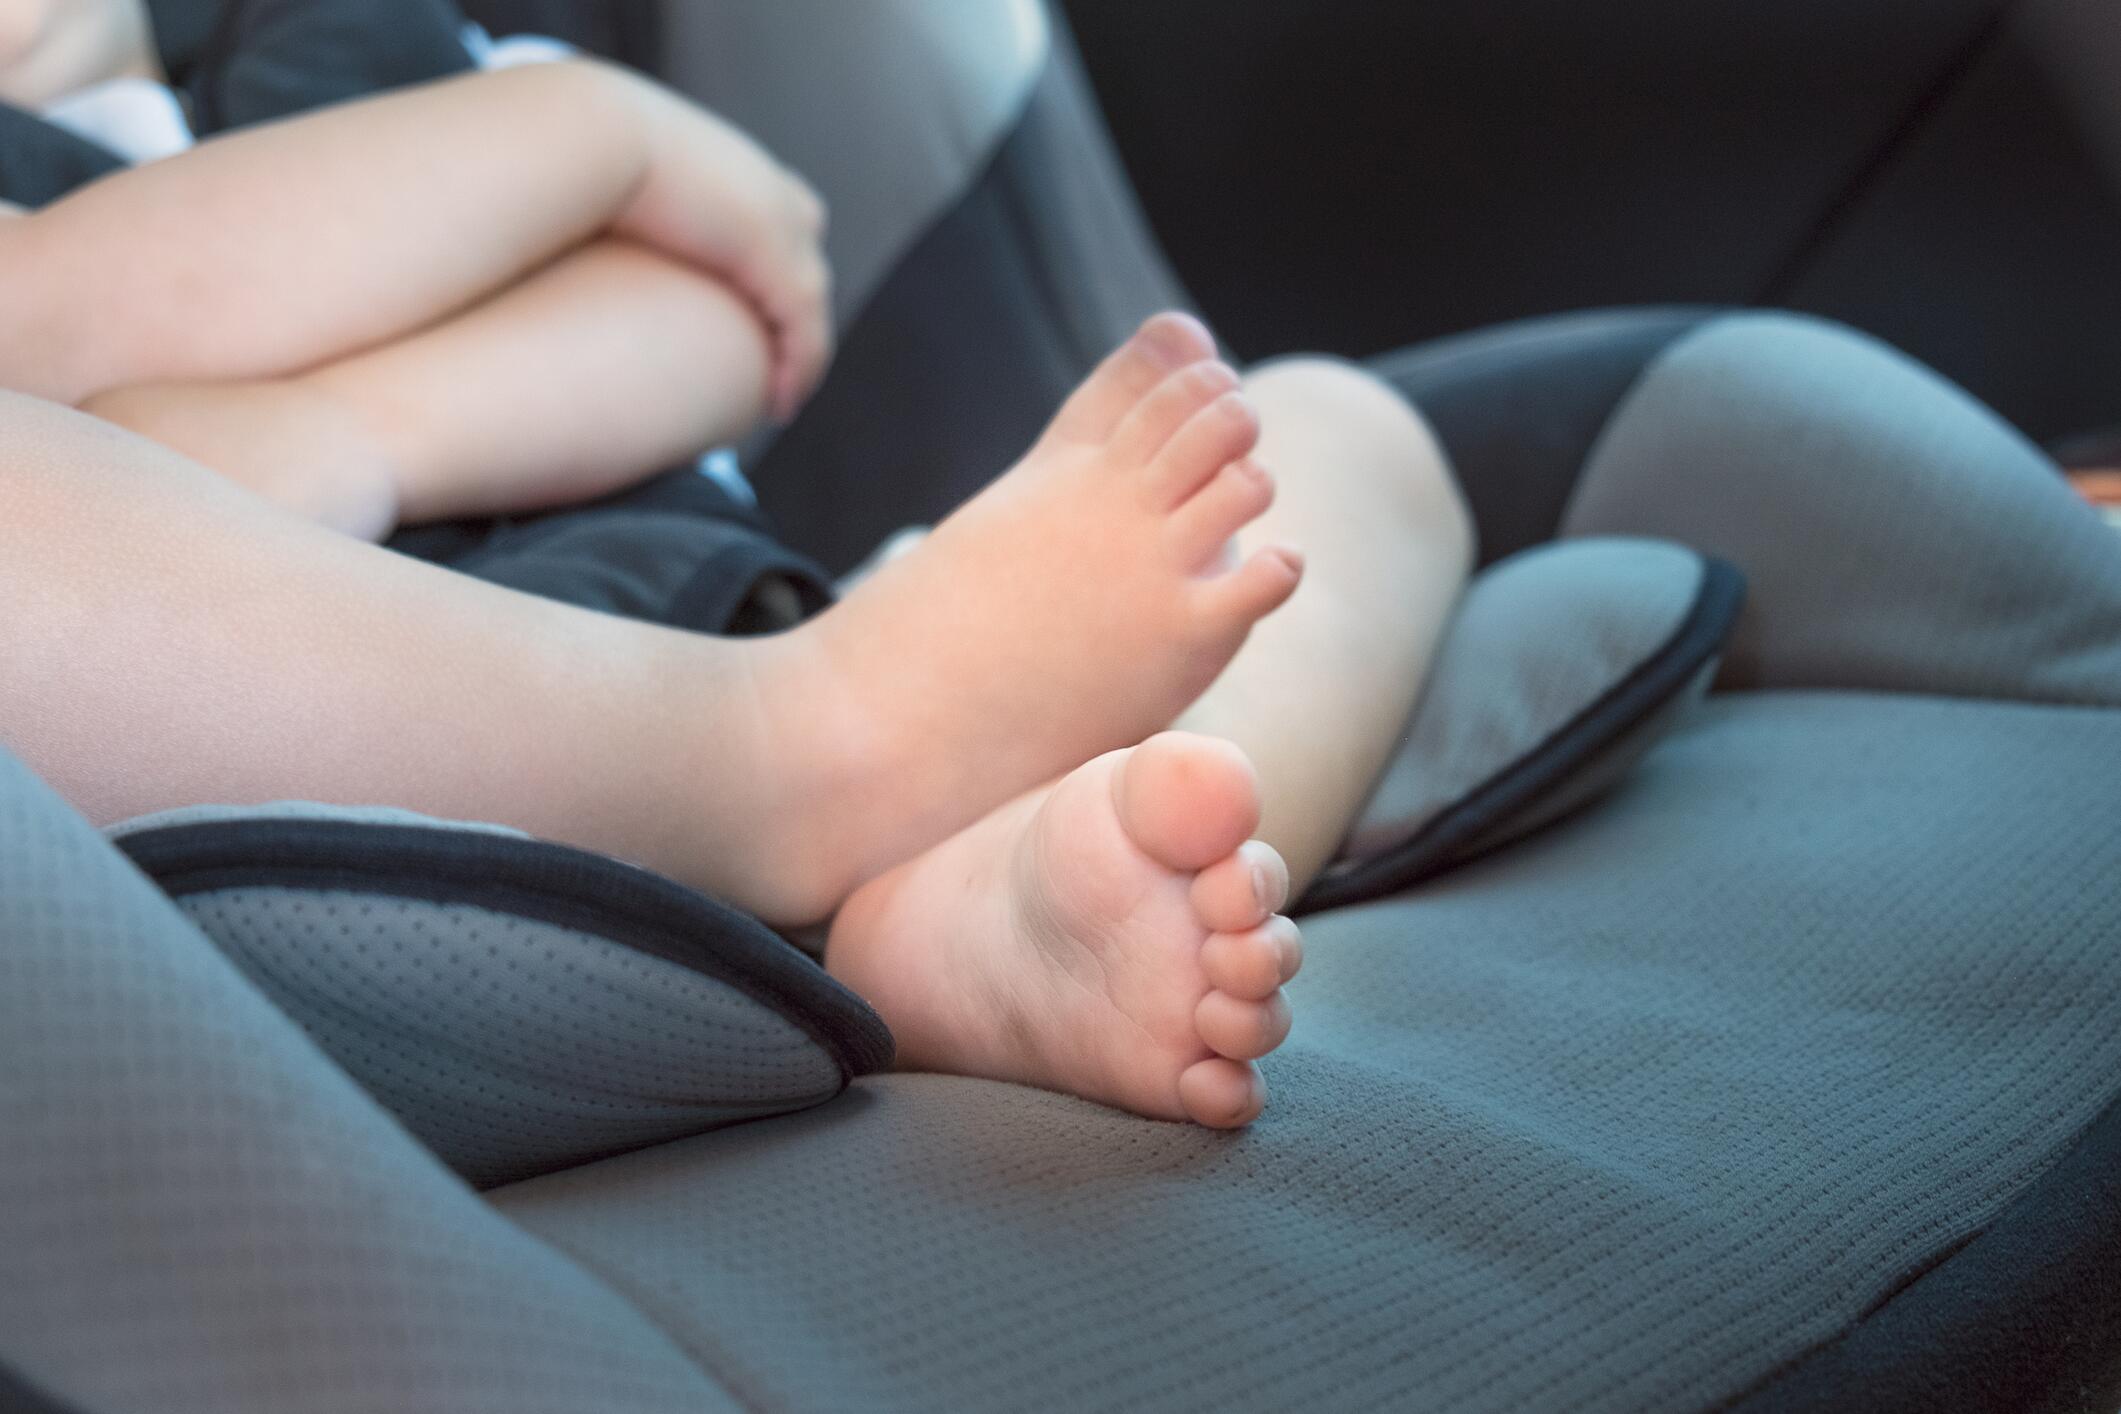 Kind oder Tier im heissen Auto: Darf ich die Scheibe einschlagen?